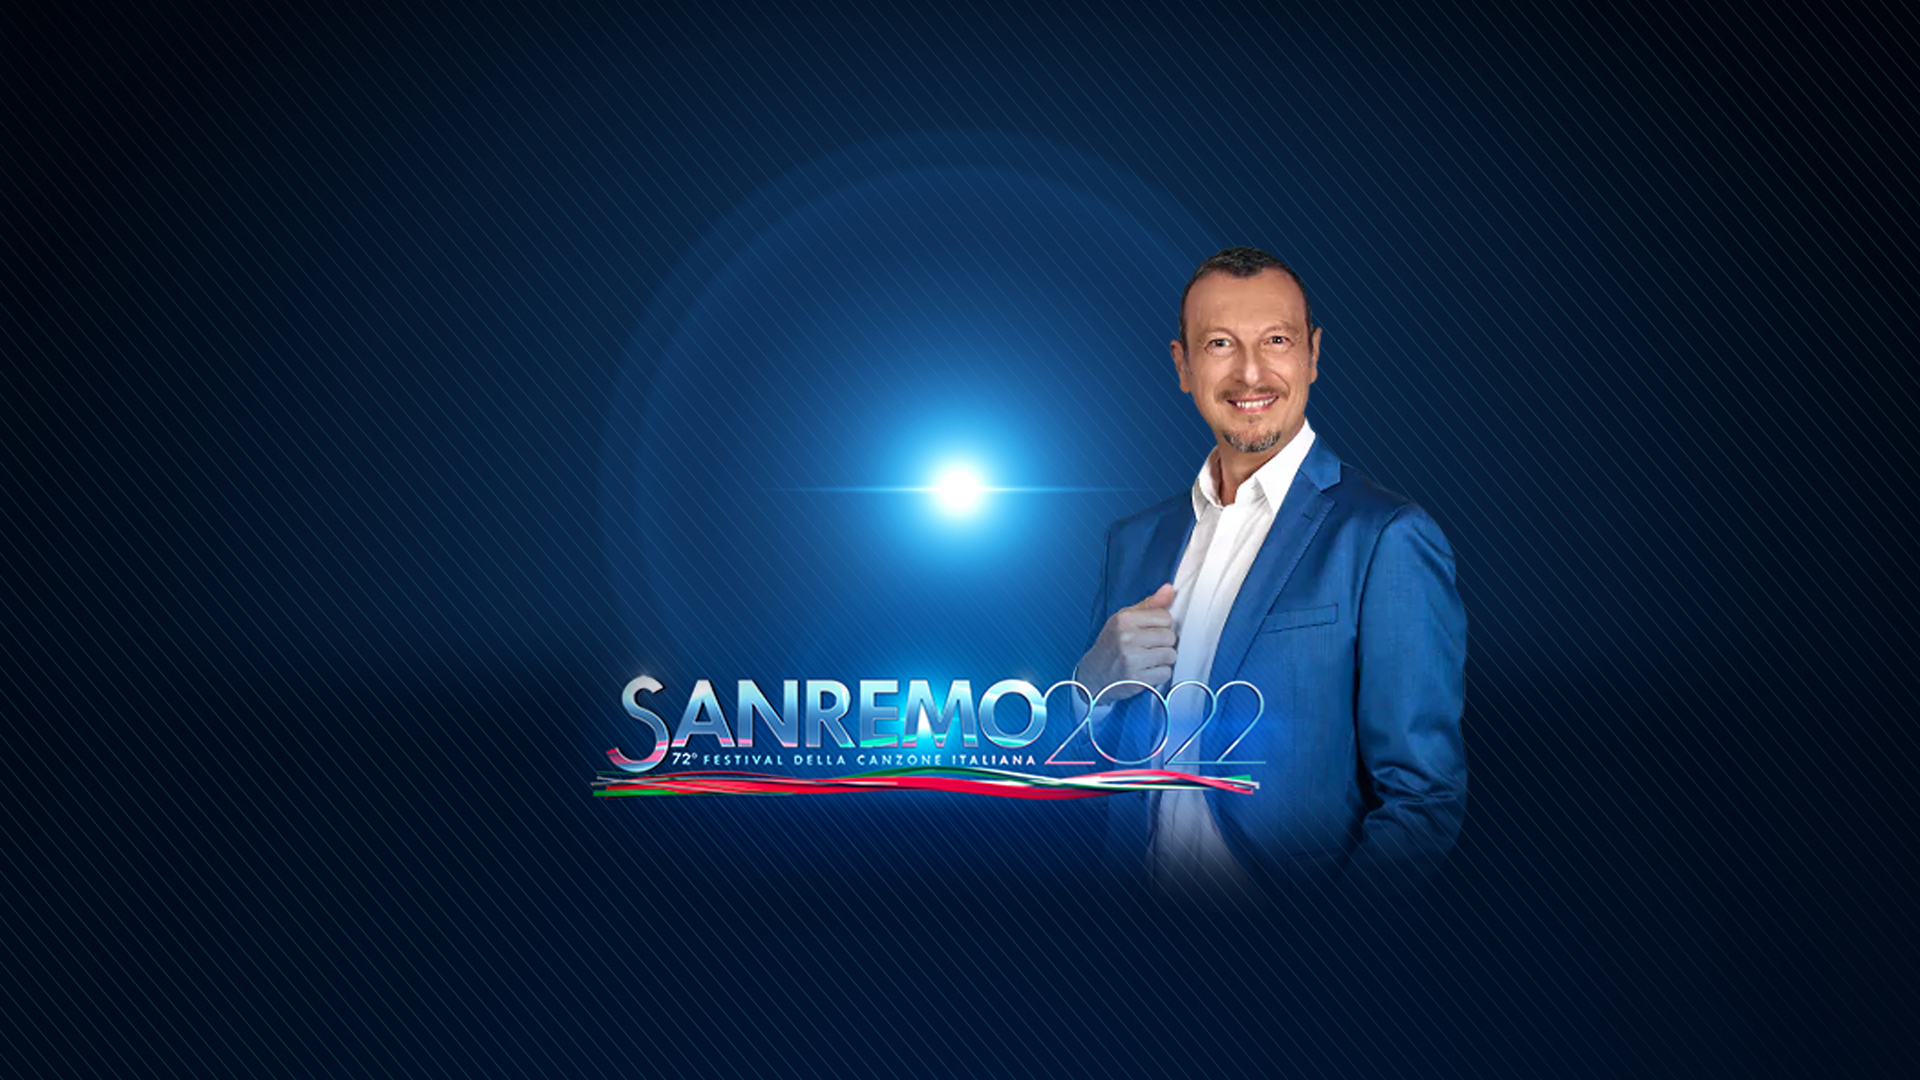 Presentados los artistas que formarán el line-up de SanRemo 2022